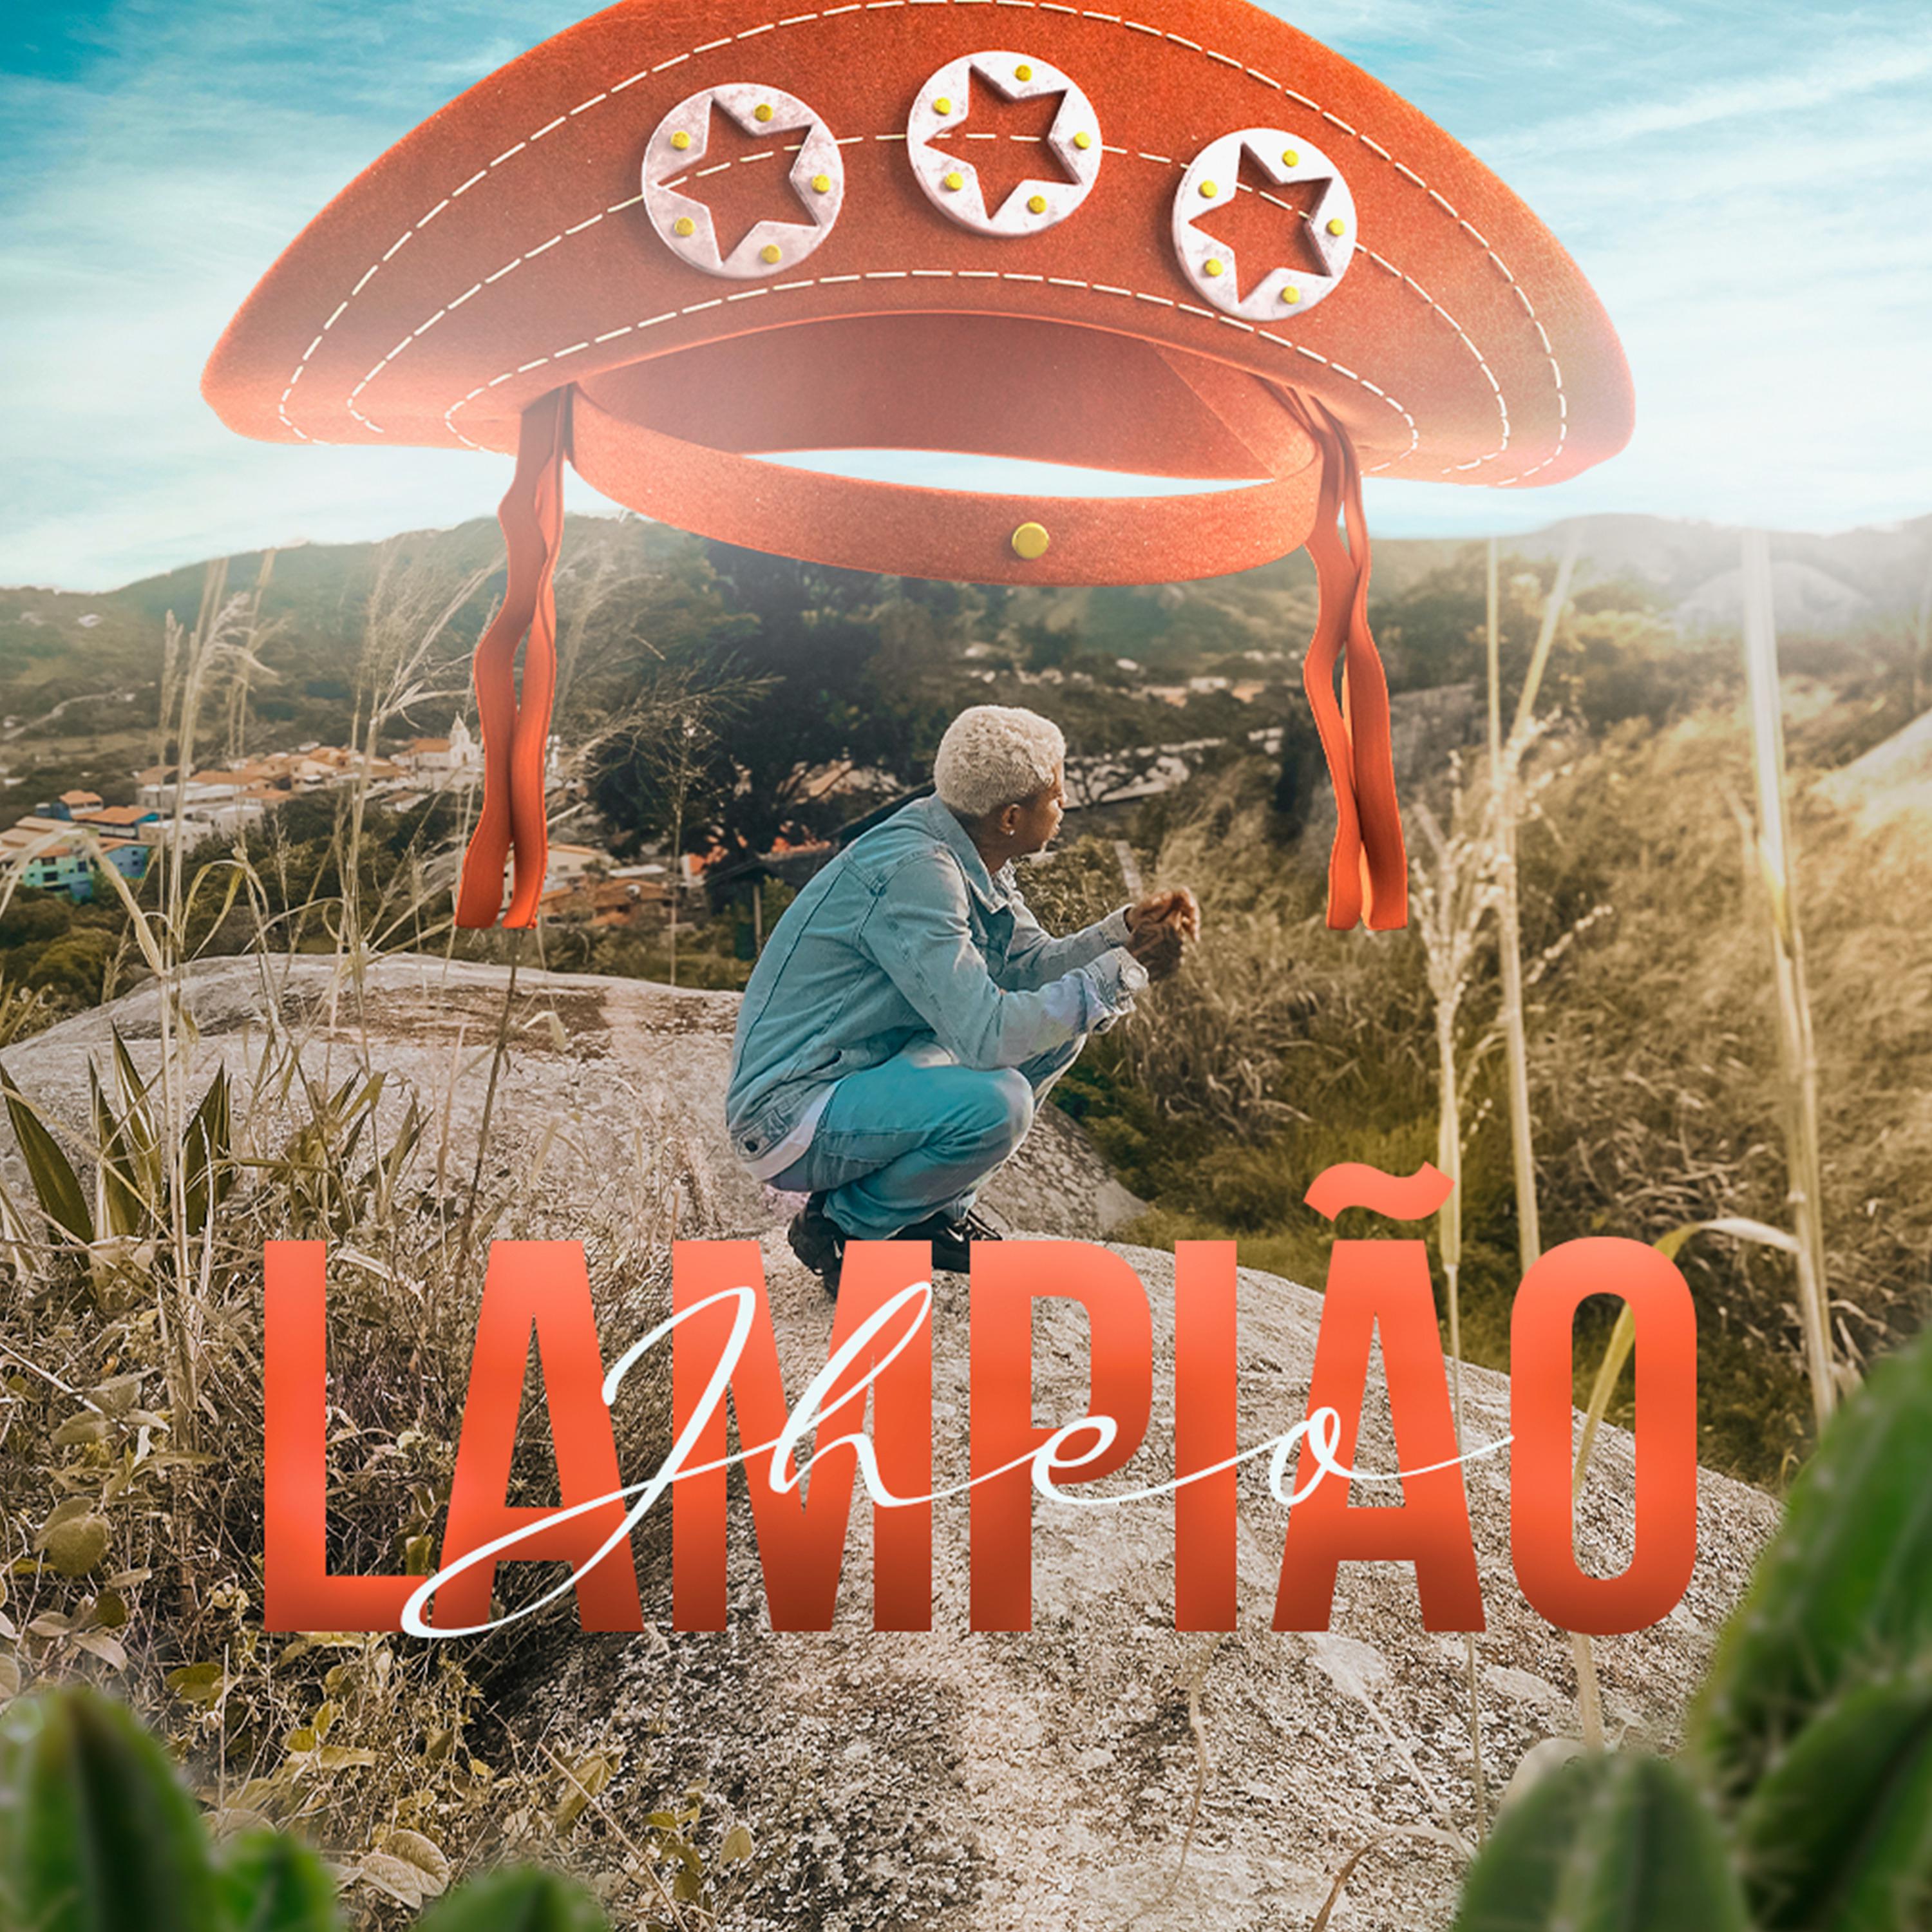 Постер альбома Lampião